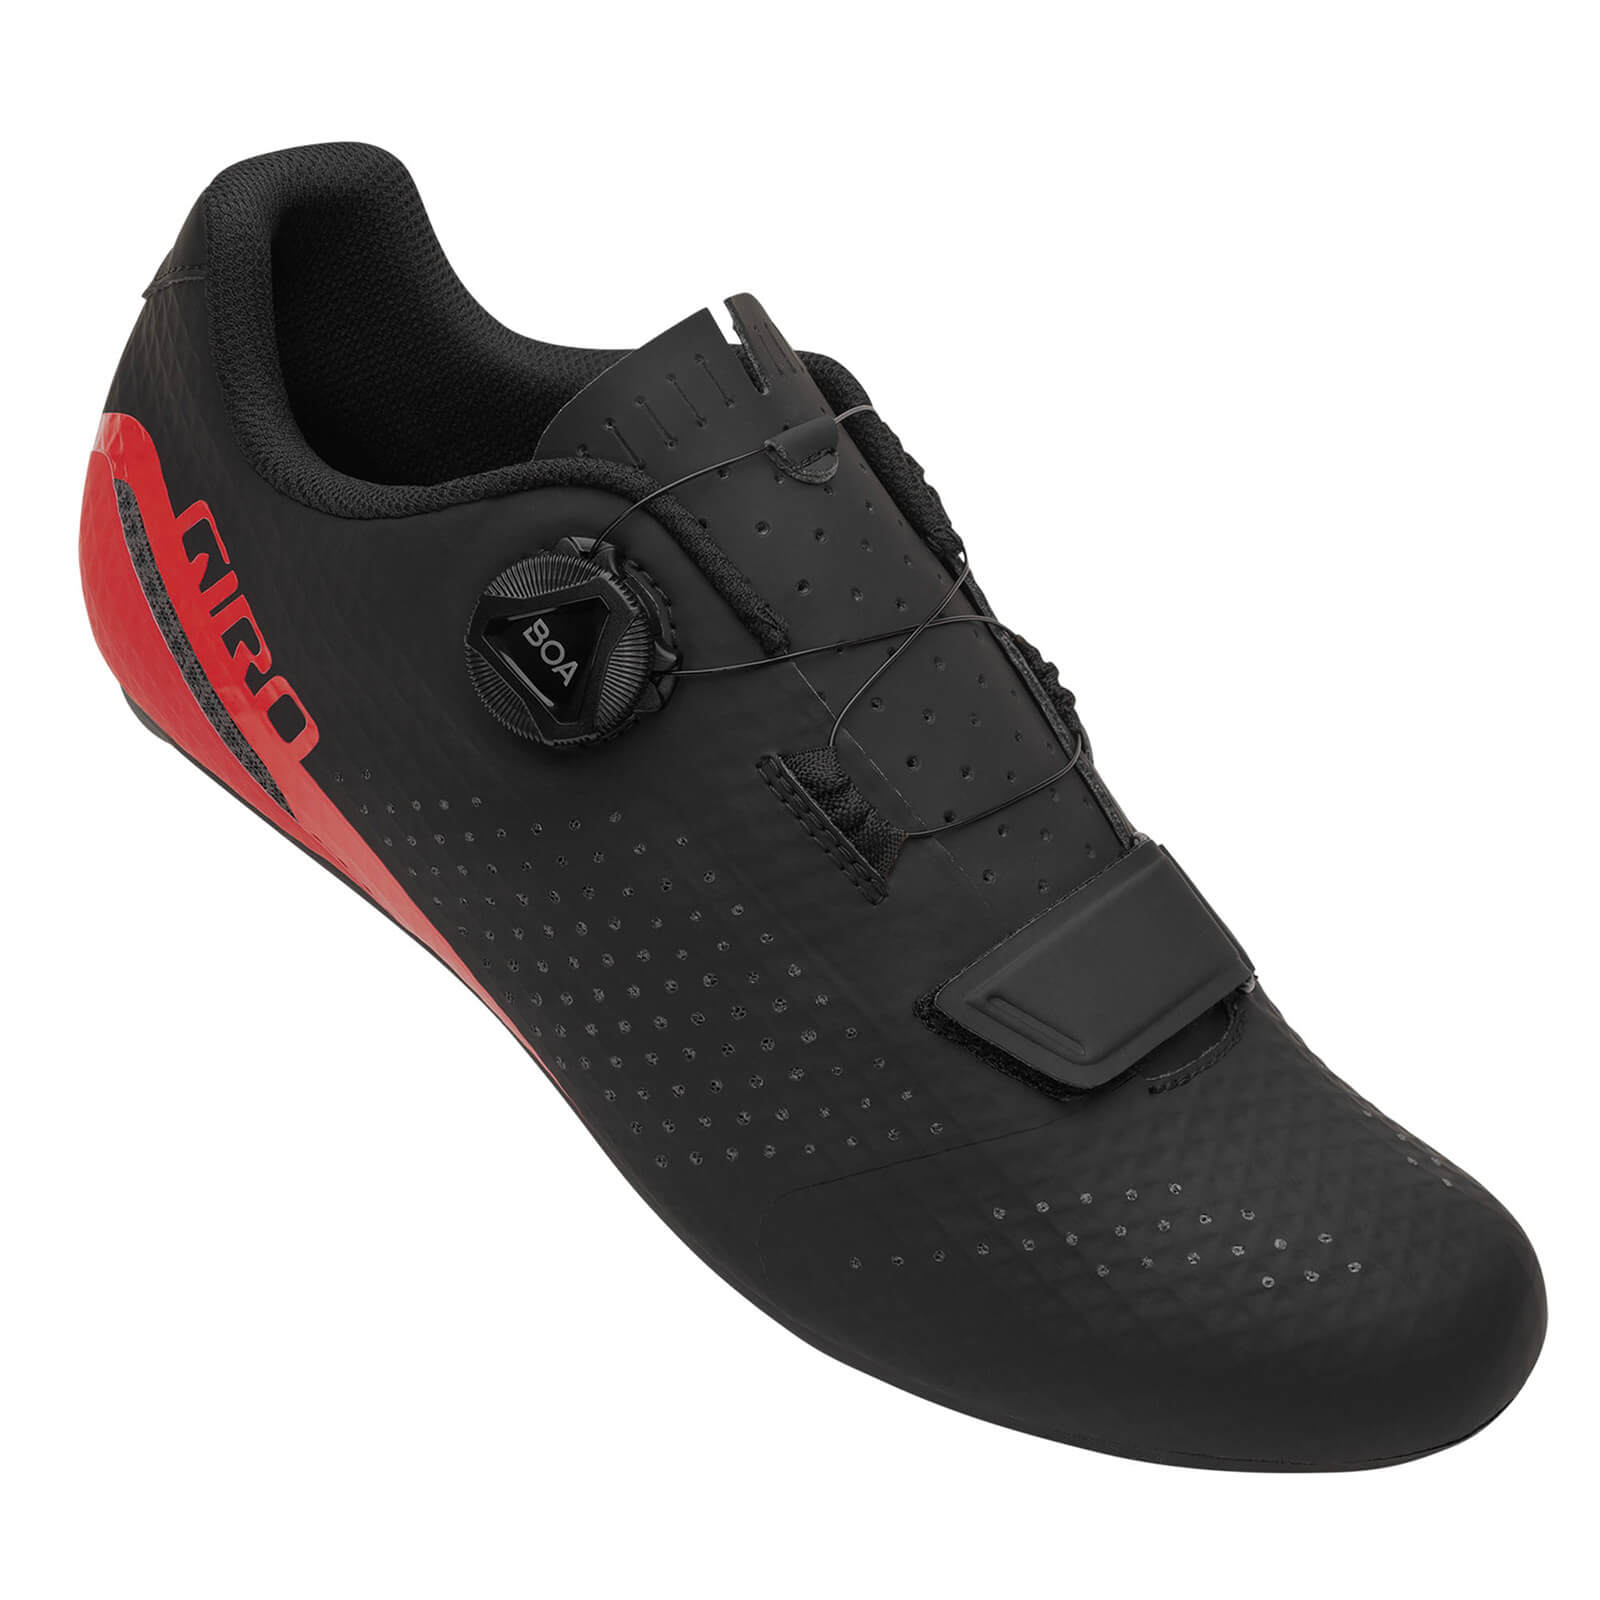 Giro Cadet Road Shoes – EU 42 – Black/Bright Red